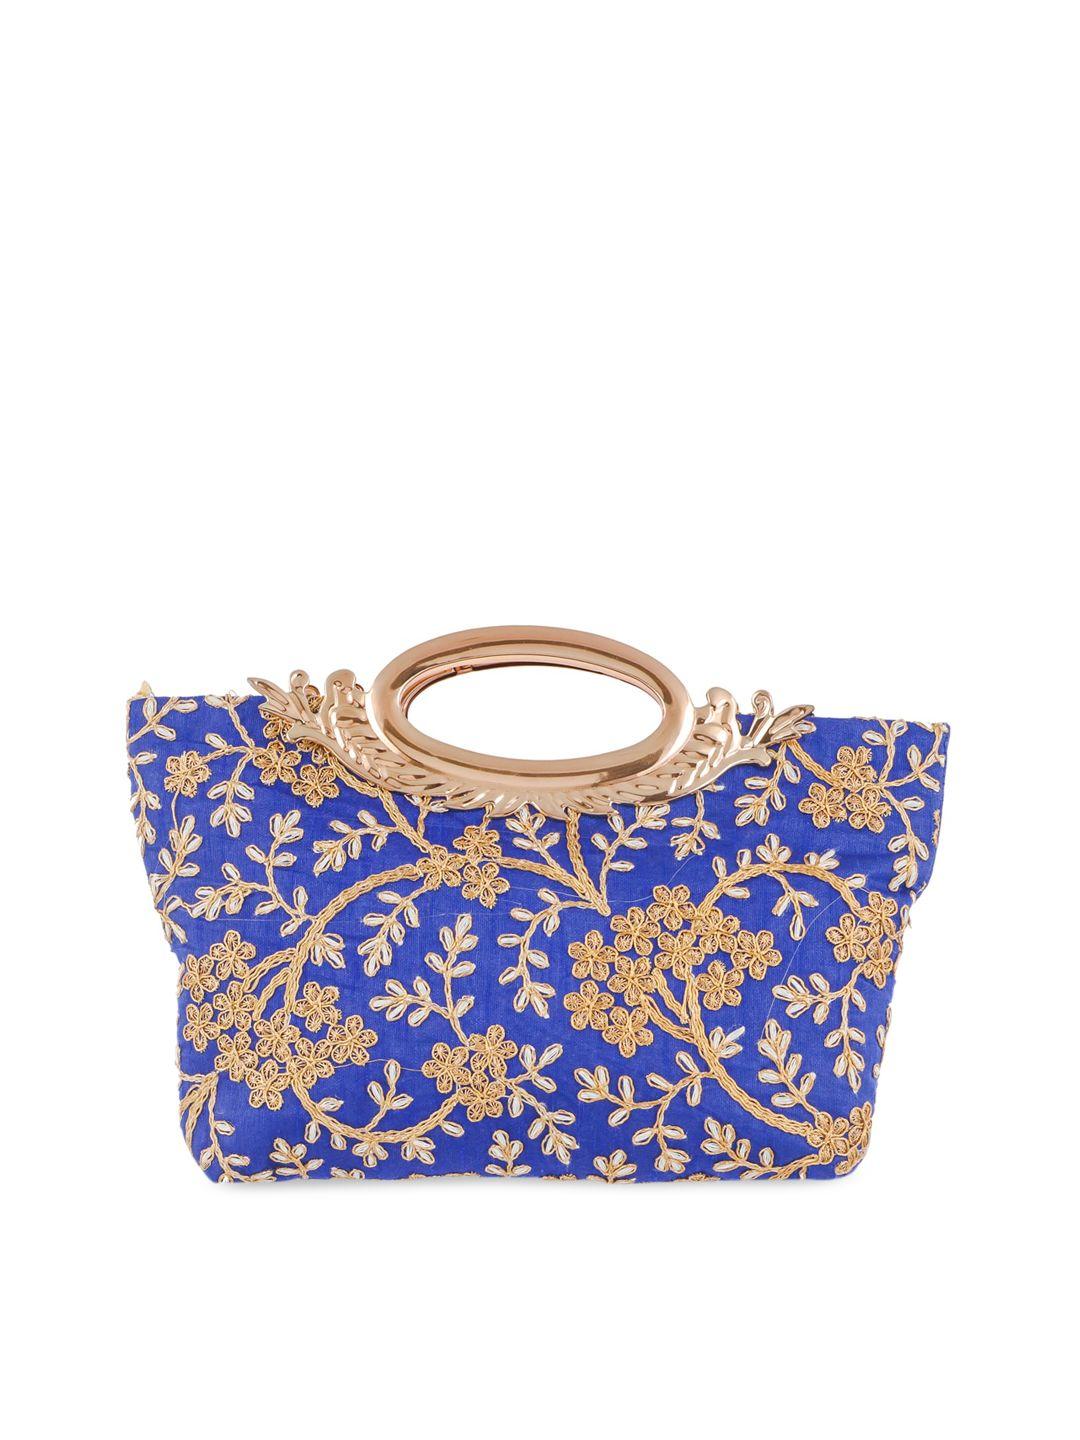 kuber industries blue & gold-toned embellished handheld bag